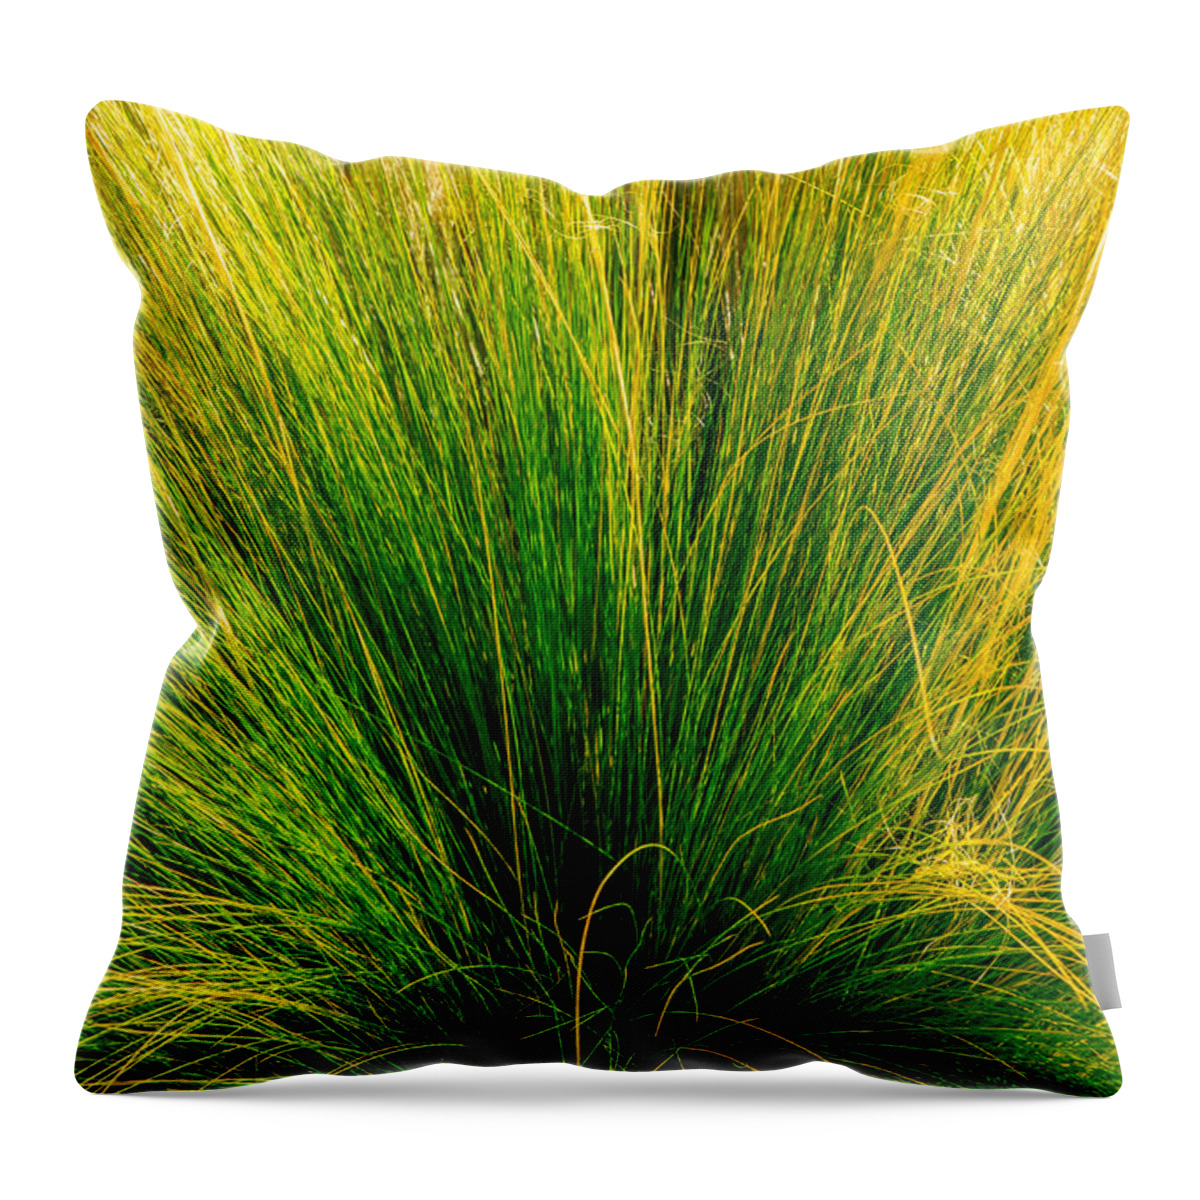 Grass Throw Pillow featuring the photograph Grass by Derek Dean